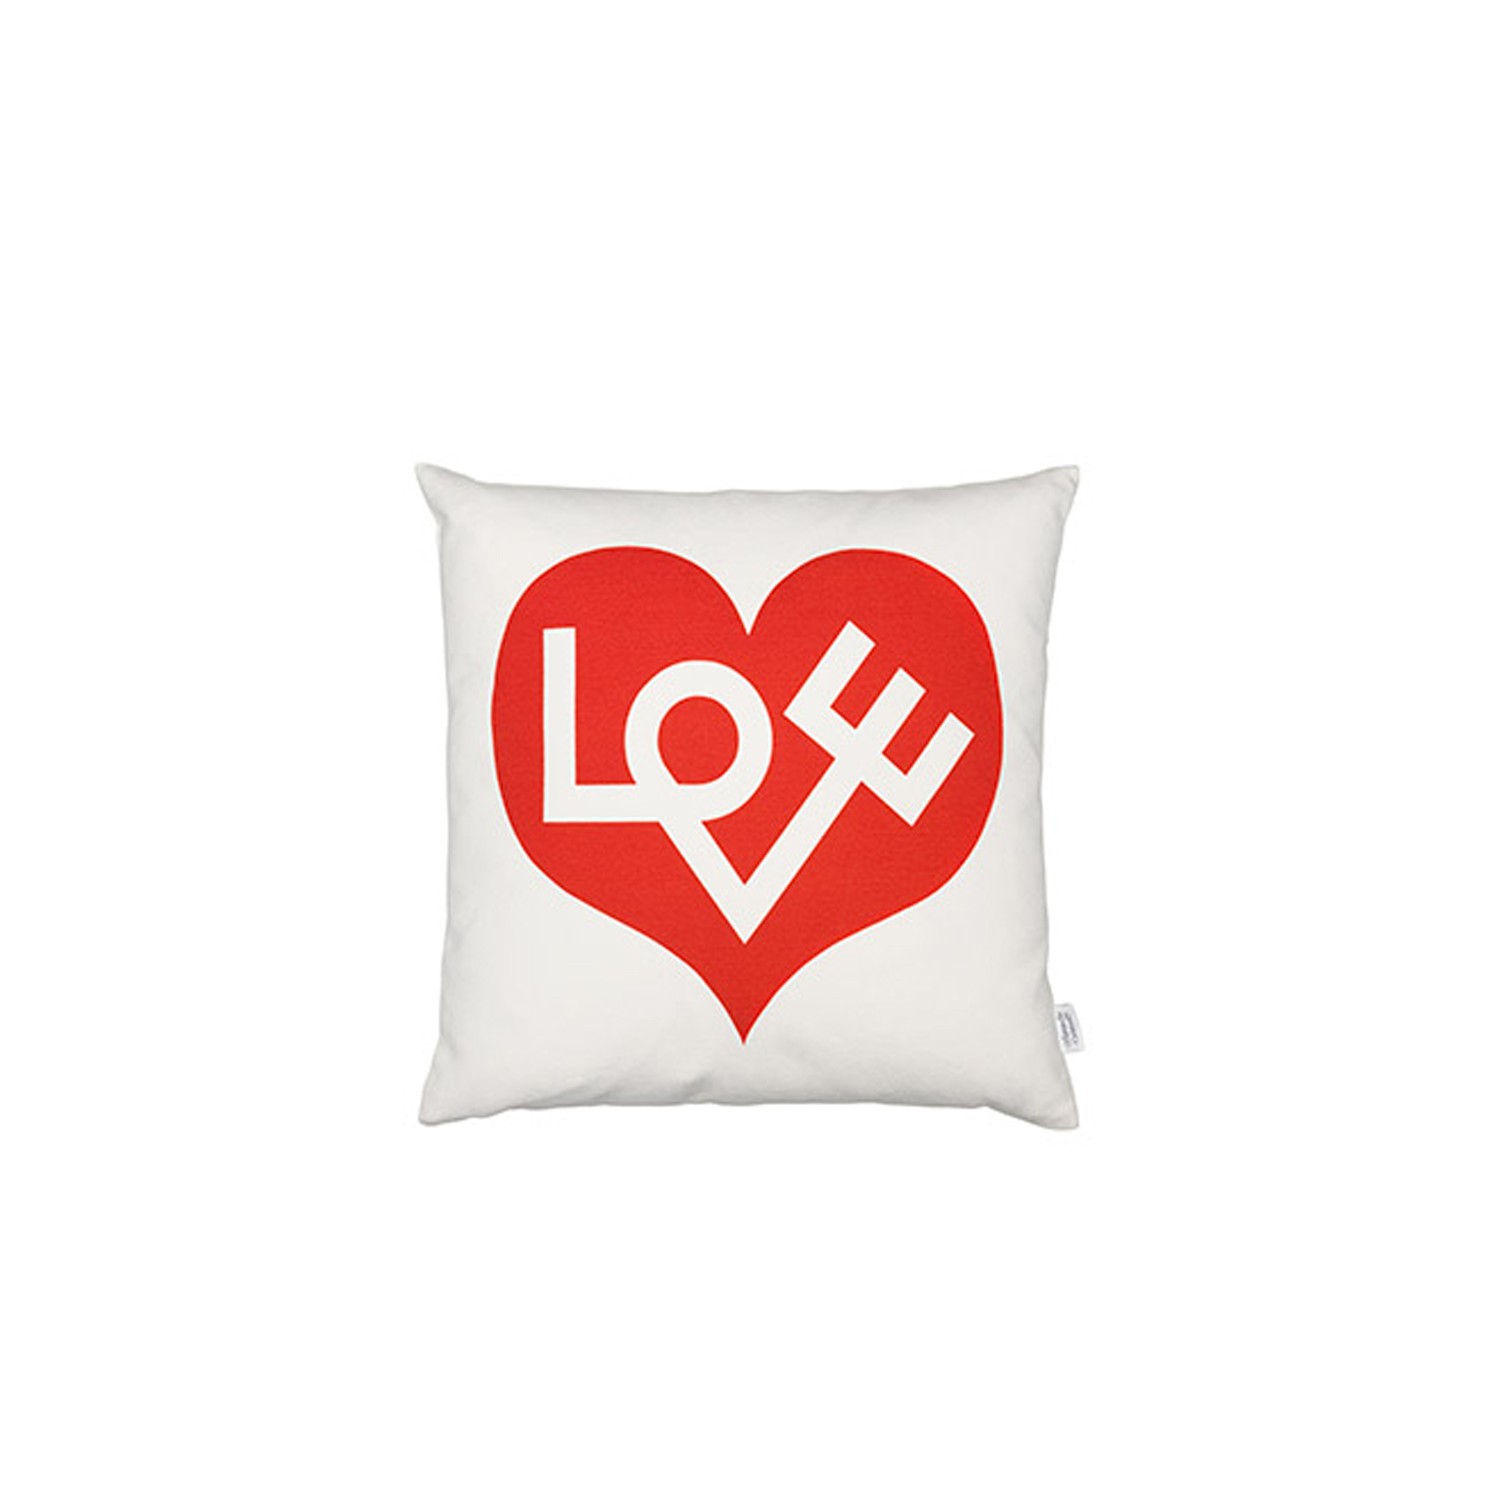 Como hacer Cojines con Corazon :: Decora Pillow diy: Pillow heart 